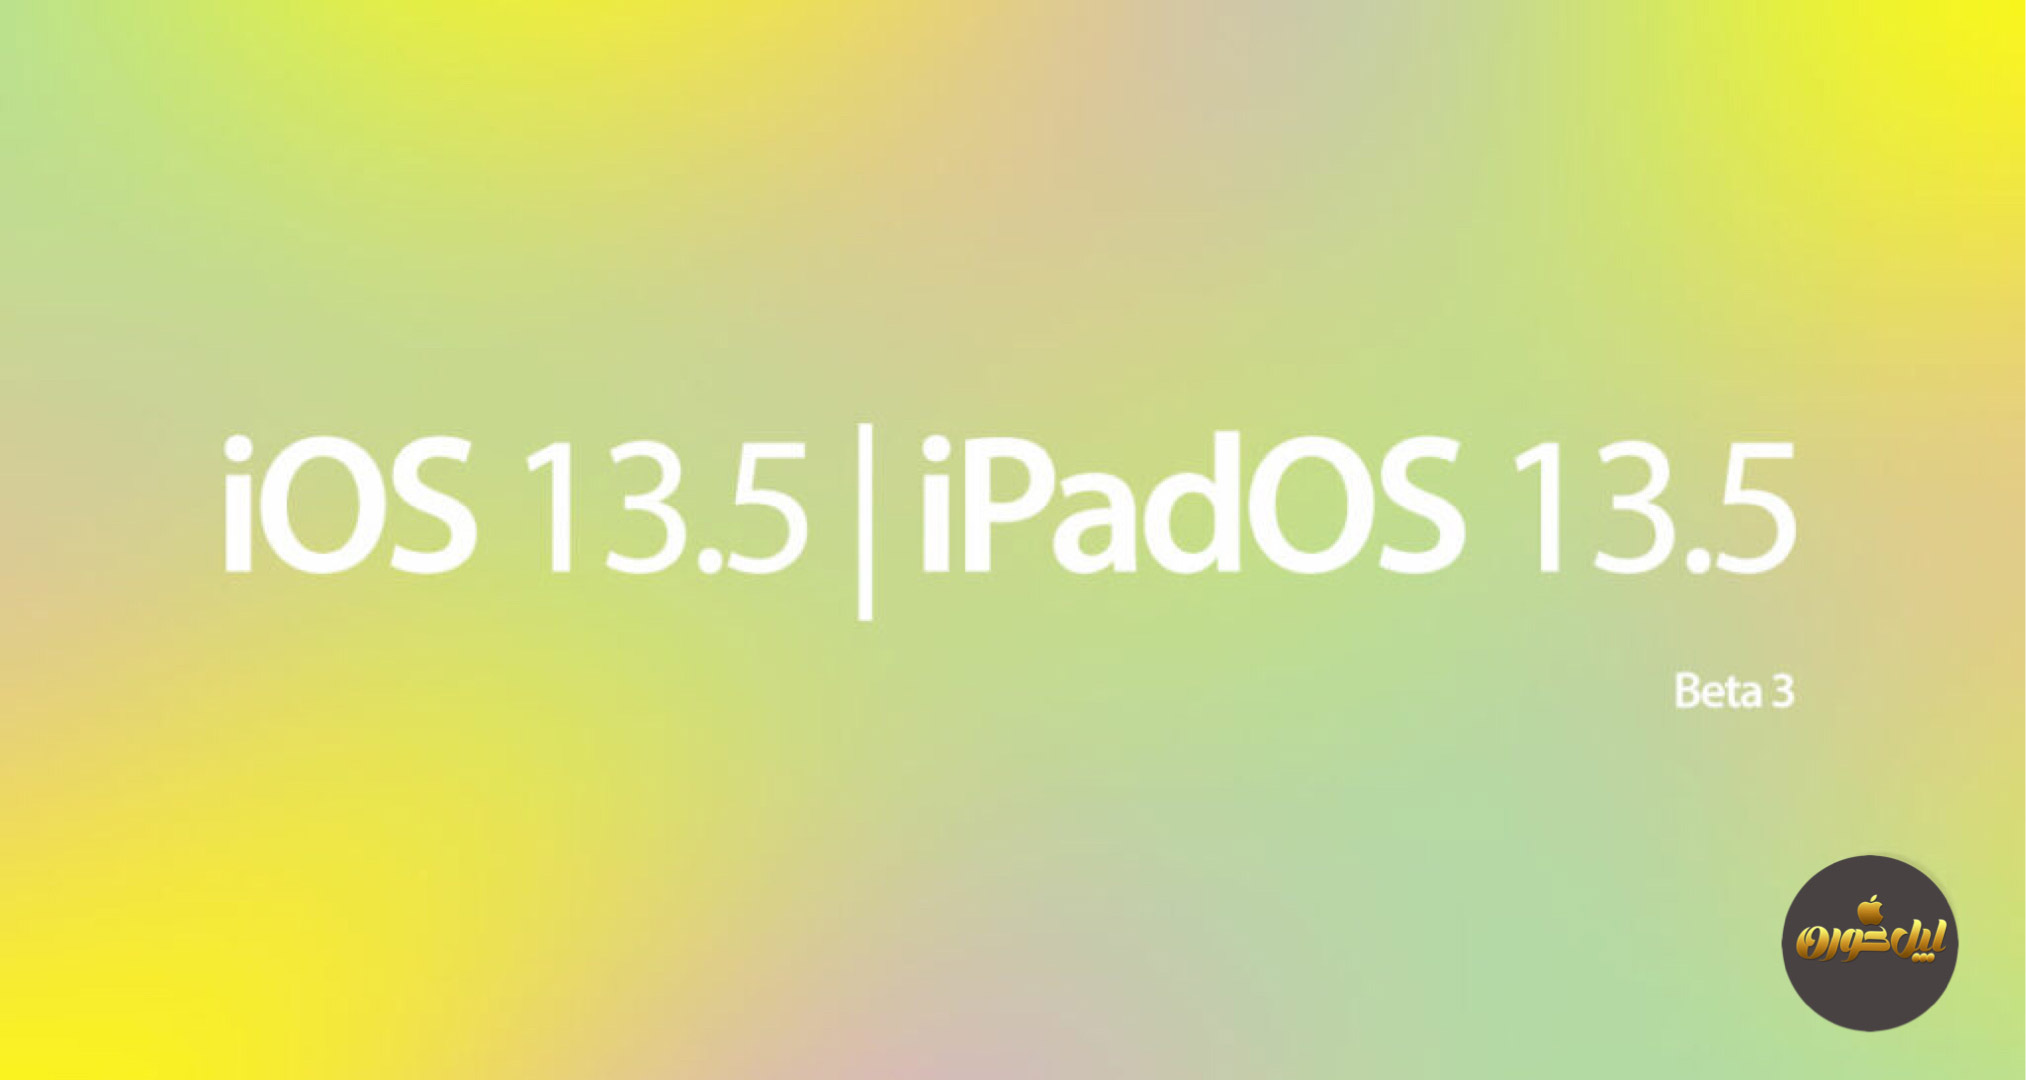 سومین نسخه آزمایشی iOS 13.5 و iPadOS 13.5